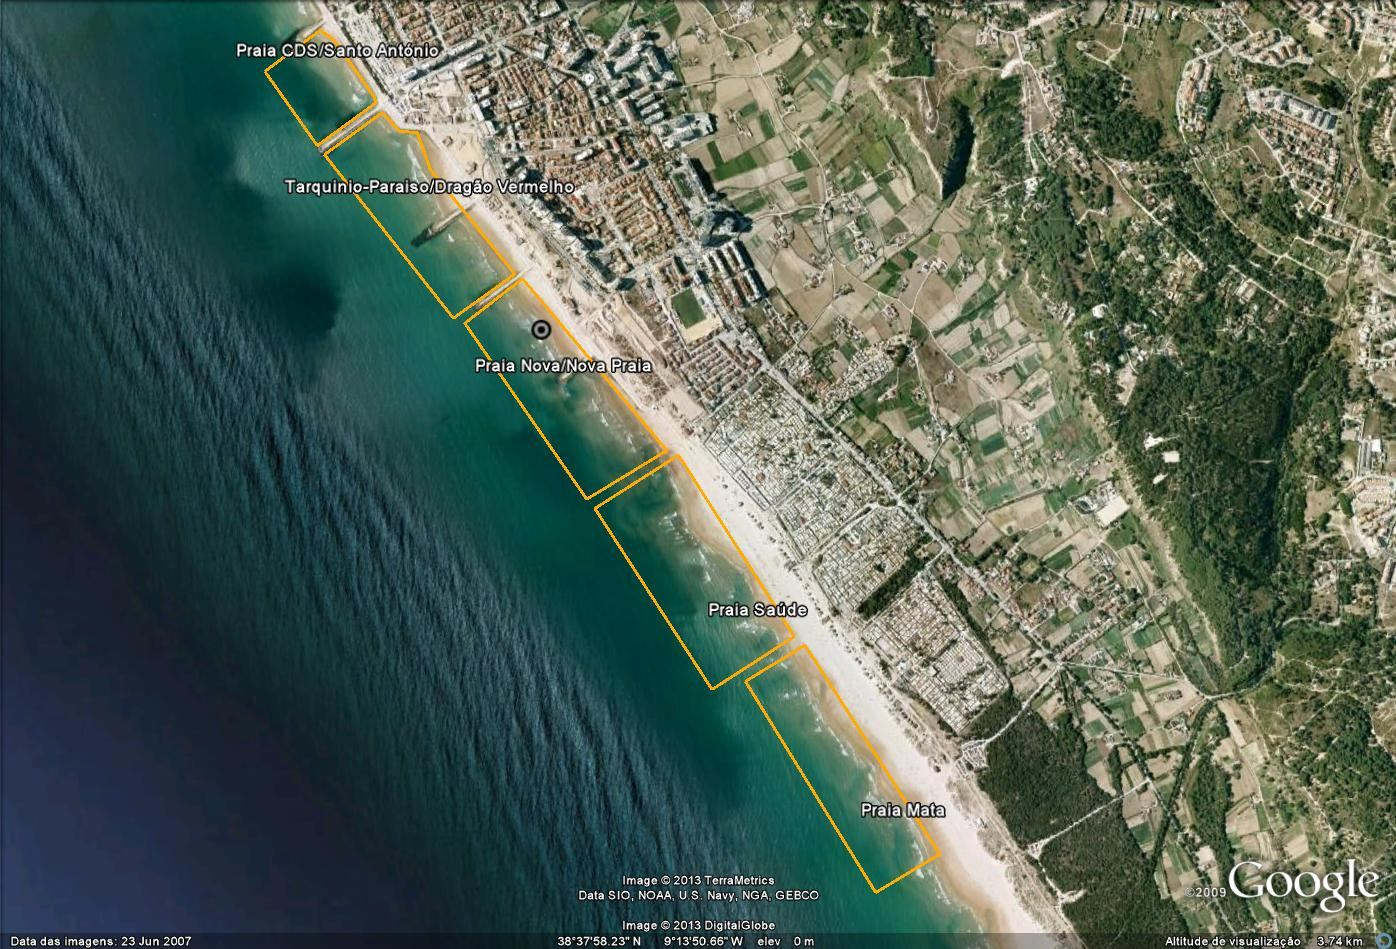 Delimitação da Água Balnear e Localização do Ponto de Monitorização Coordenadas do Ponto de Monitorização*: Frente ao apoio de praia da Praia Nova. Latitude 38,637241º; Longitude -9,235855º.